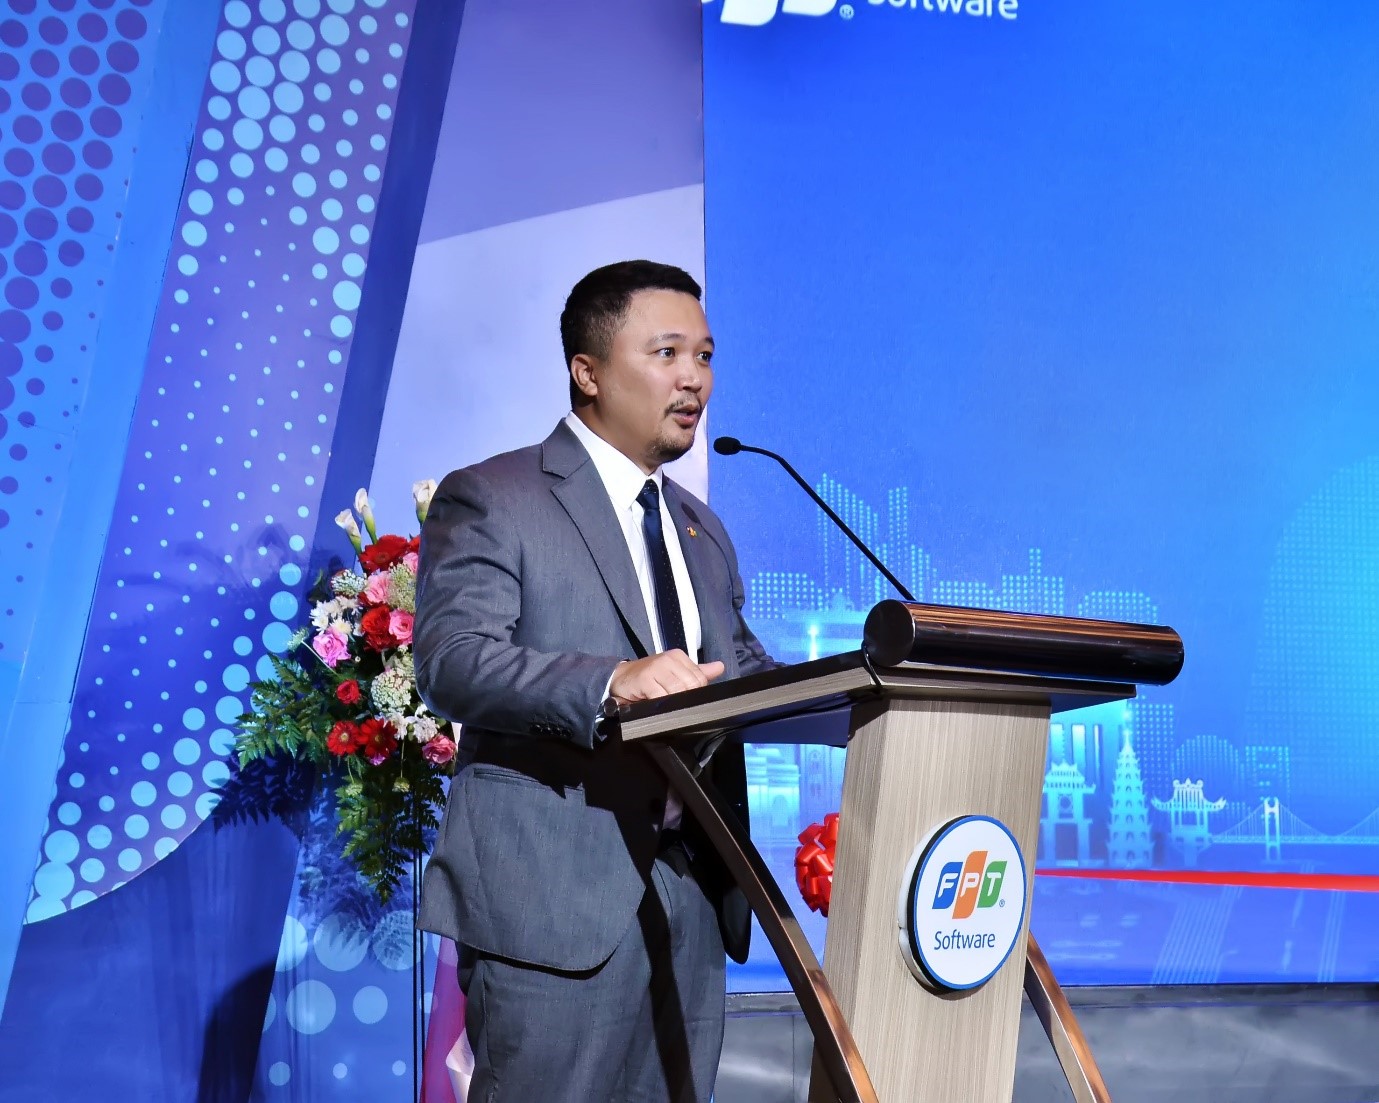 Phó Tổng giám đốc FPT Software Nguyễn Khải Hoàn tin tưởng cơ hội phát triển mạnh mẽ của công ty tại Indonesia cũng như khu vực Đông Nam Á.